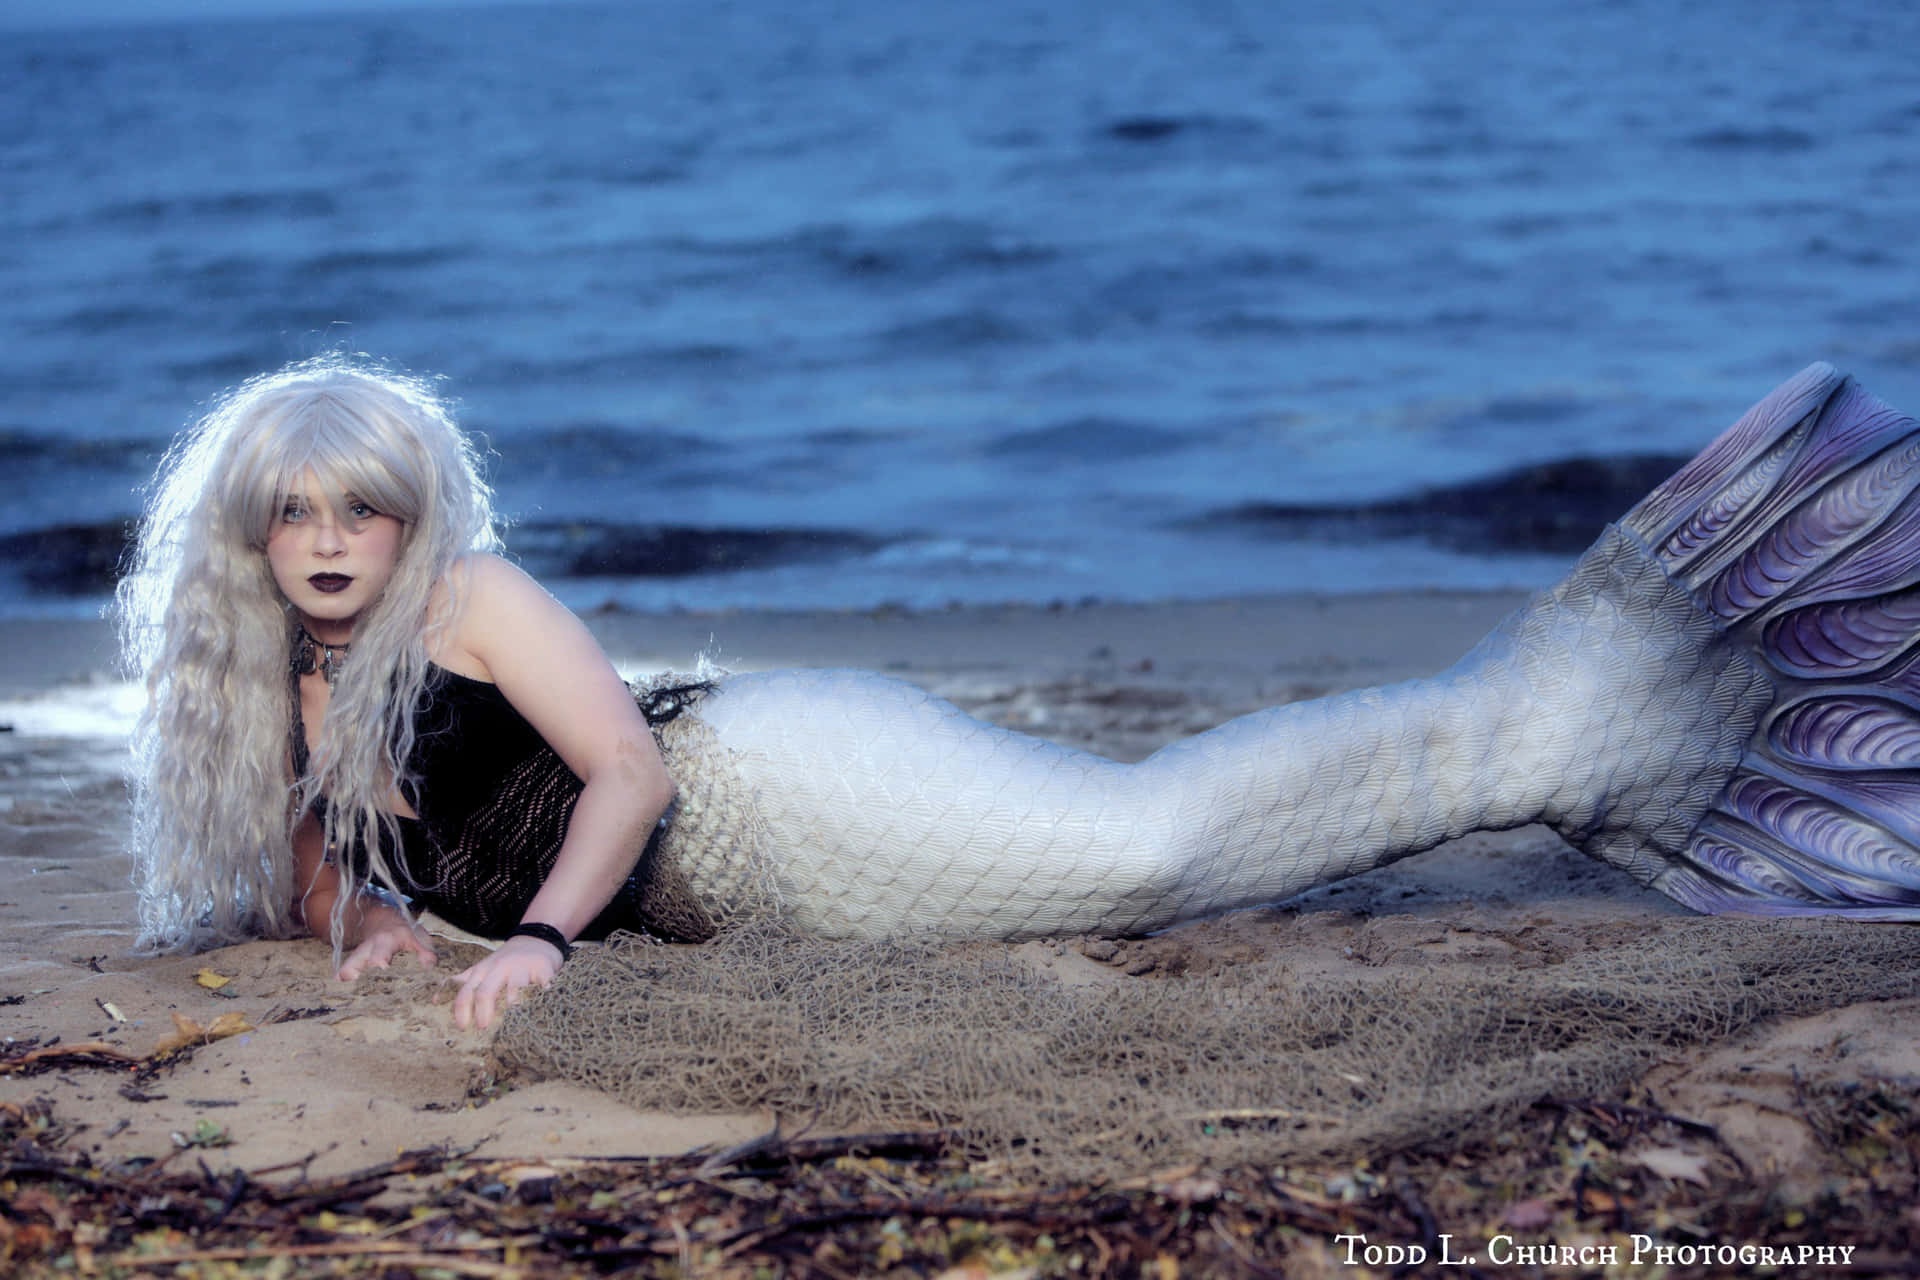 Mesmerizing Image Of Mythical Marine Creature - Real Mermaid